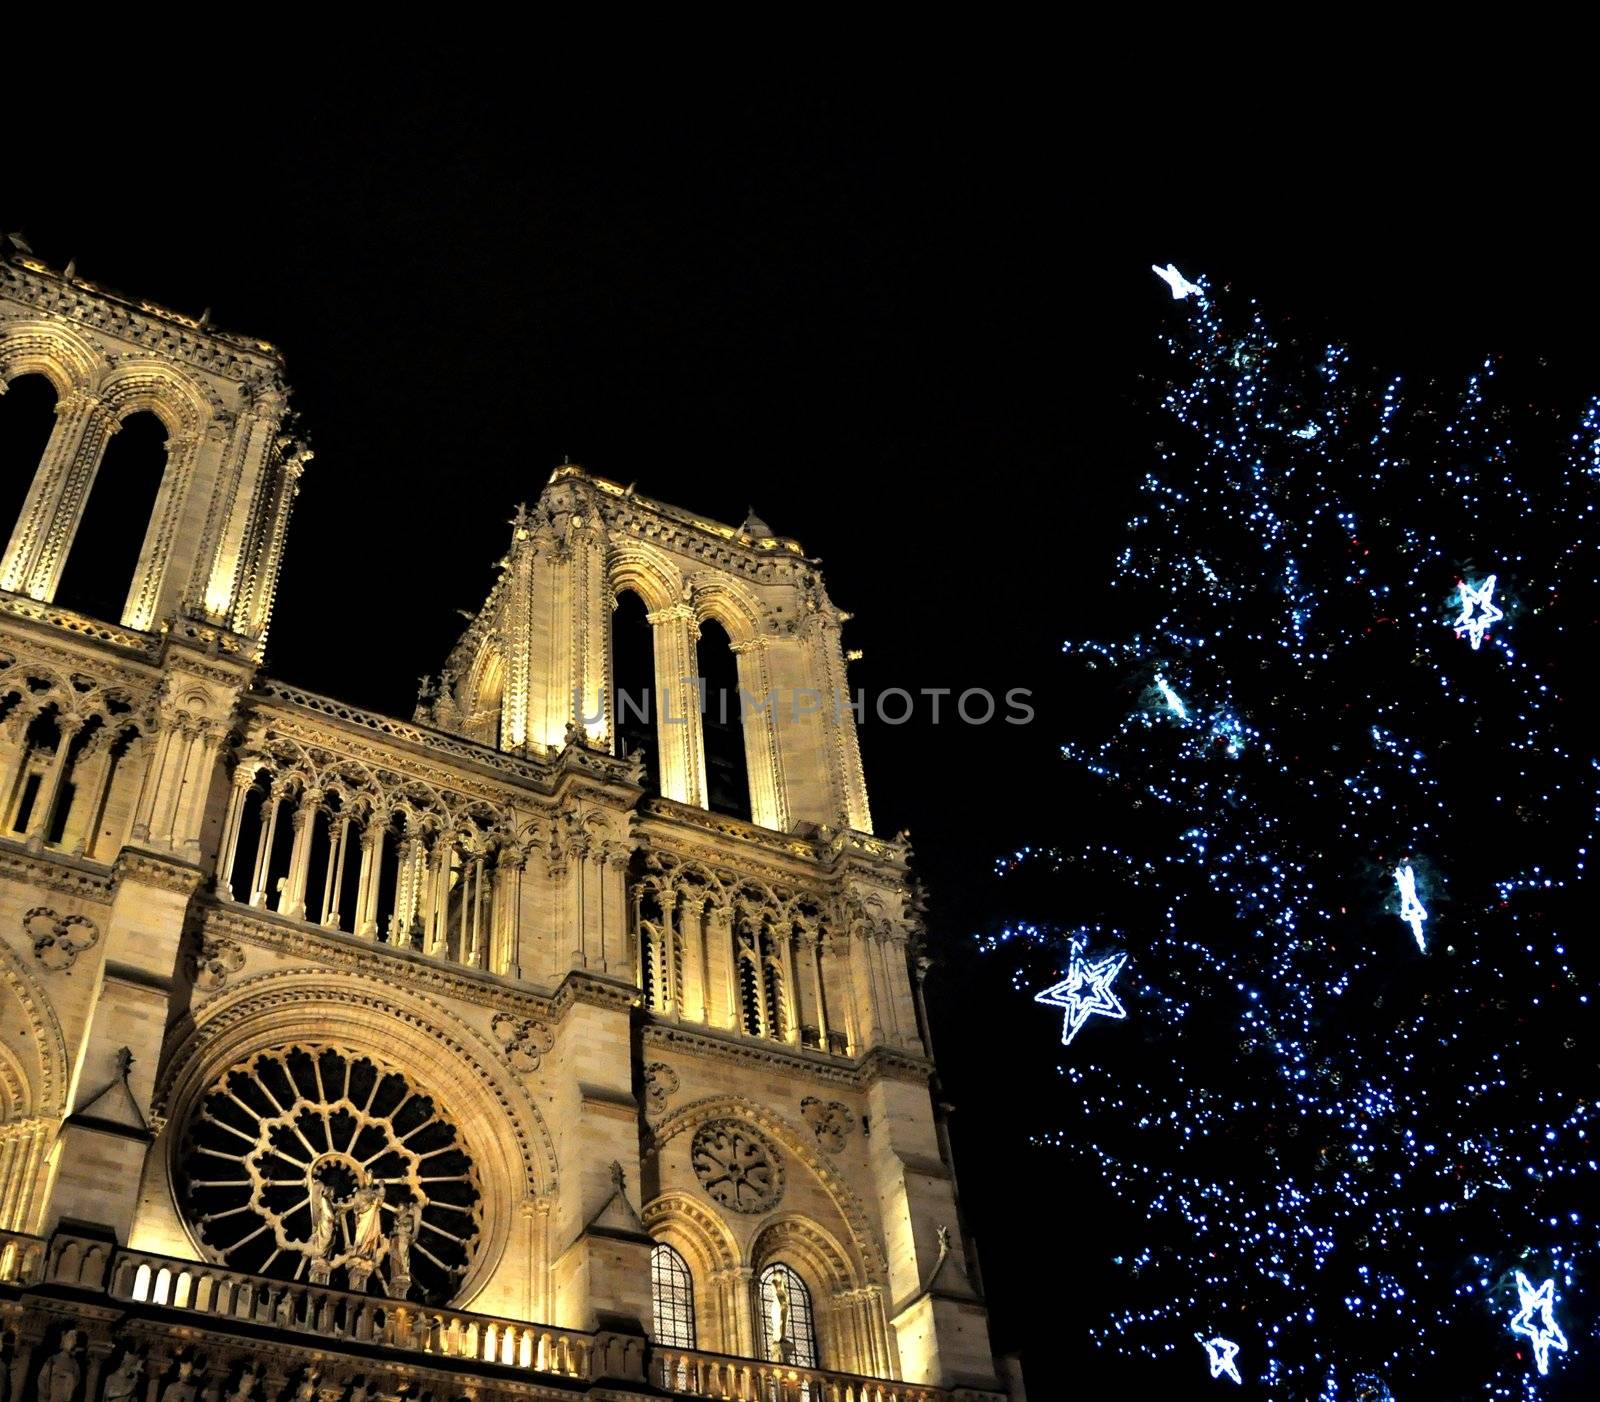 Notre-Dame de Paris at Christmas by dutourdumonde